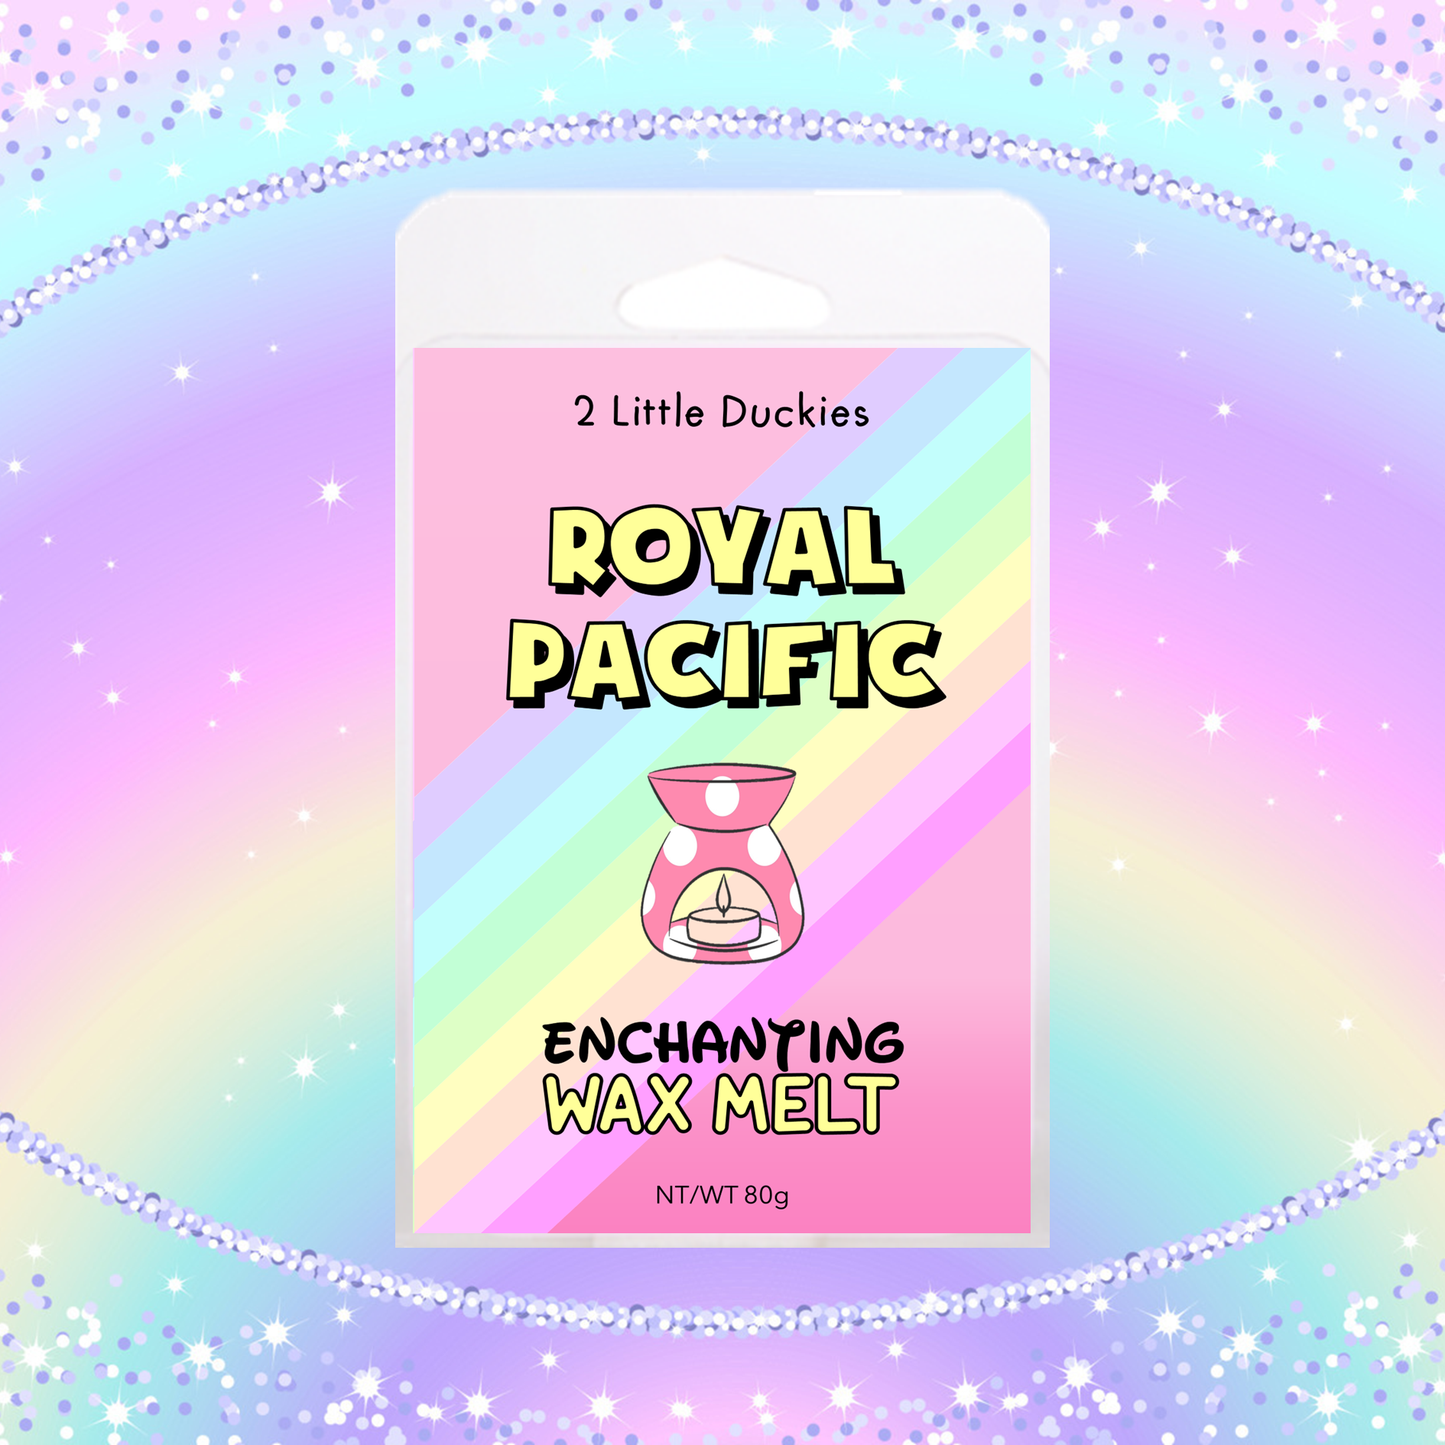 Royal Pacific Wax Melt